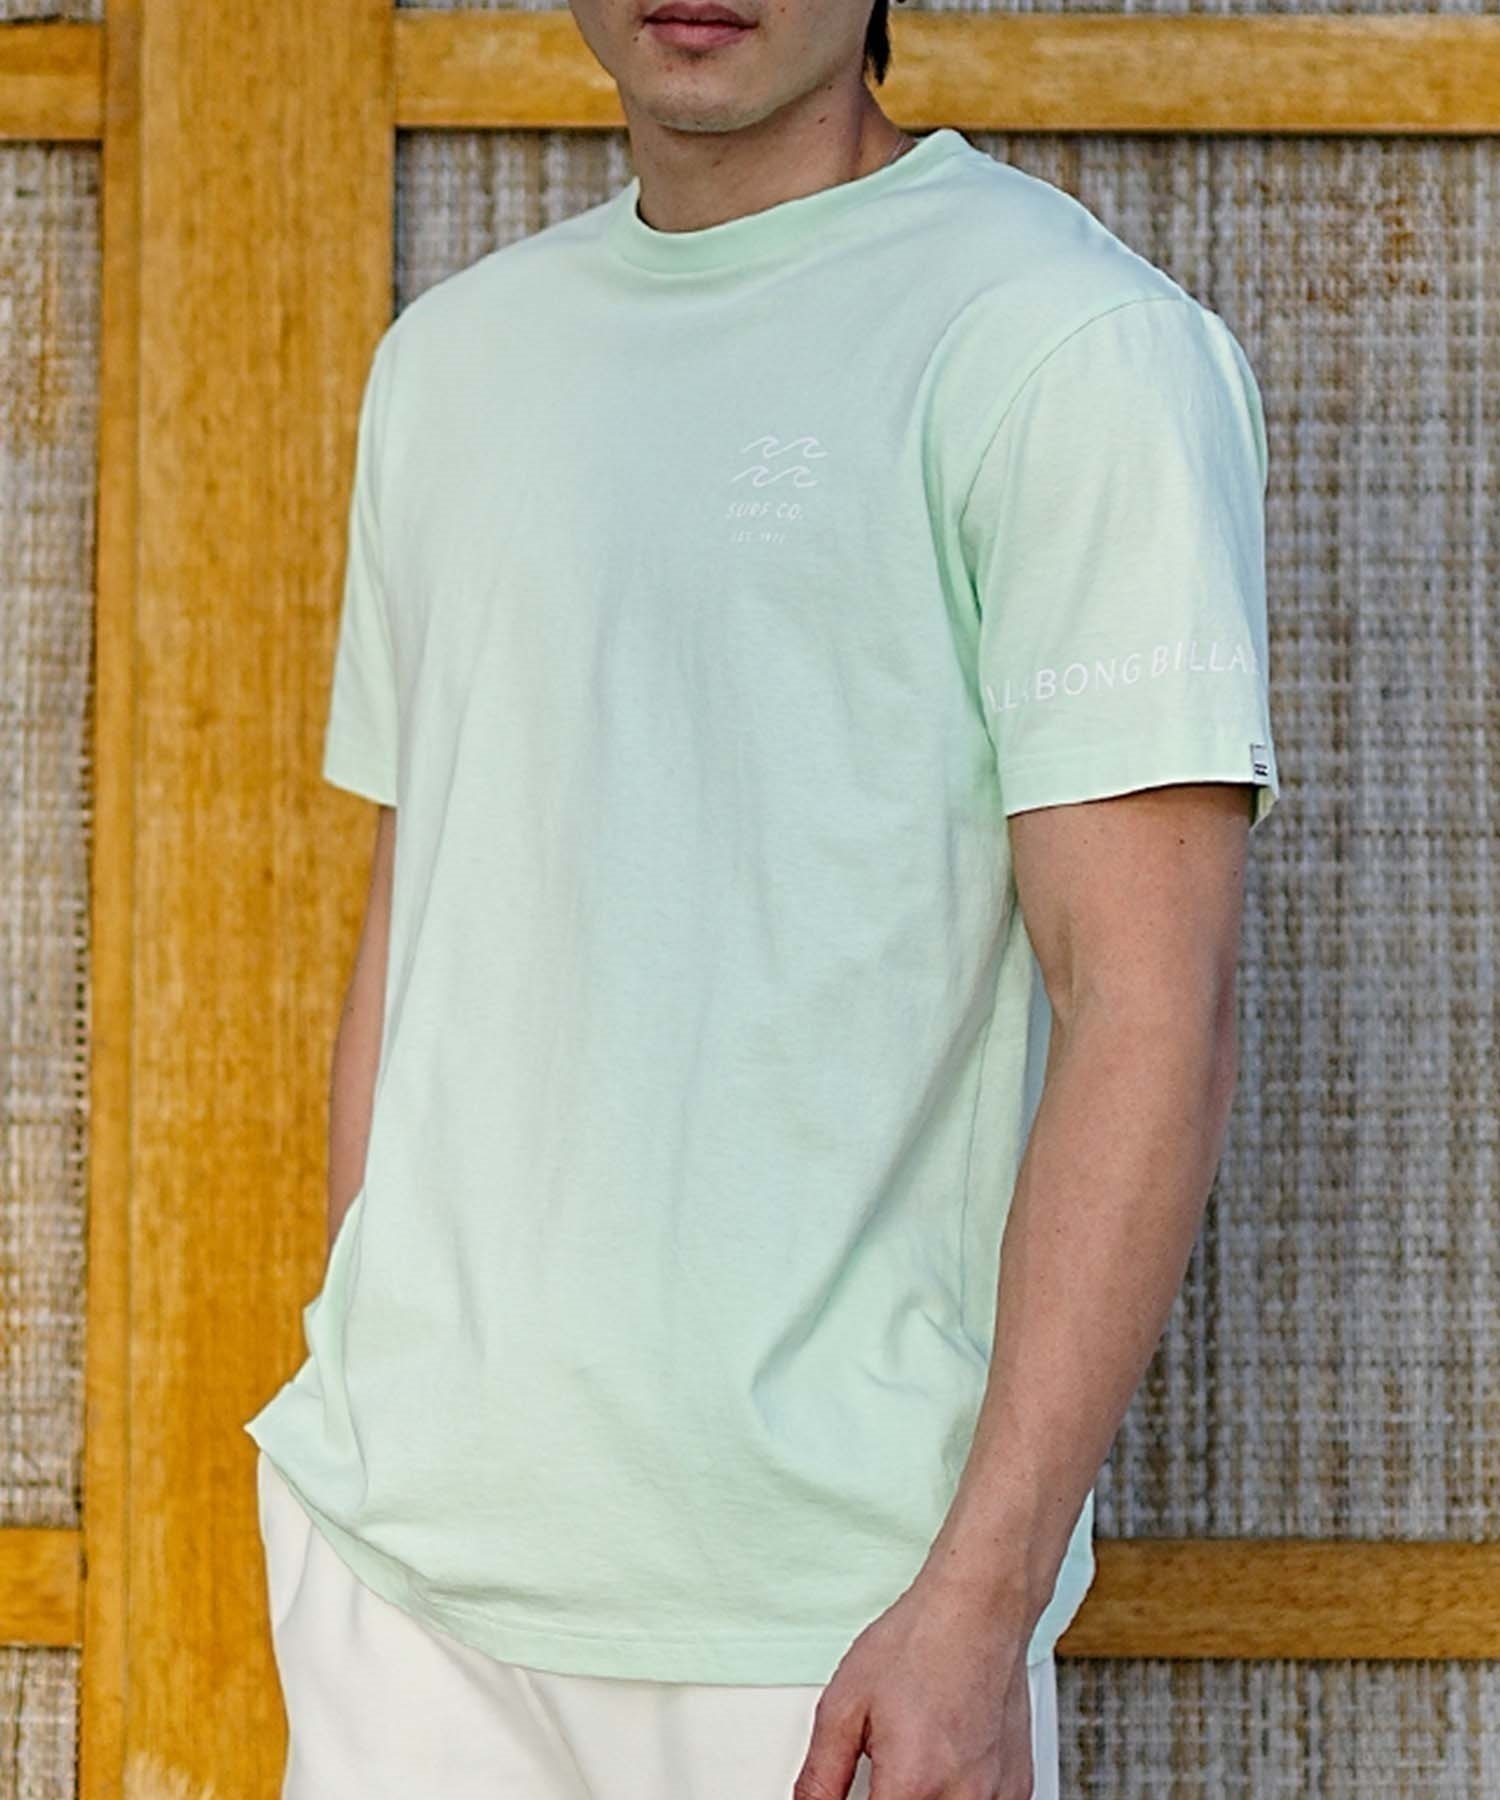 【マトメガイ対象】BILLABONG ビラボン メンズ バックプリントTシャツ ロゴT 半袖 BE011-204(WAA-S)